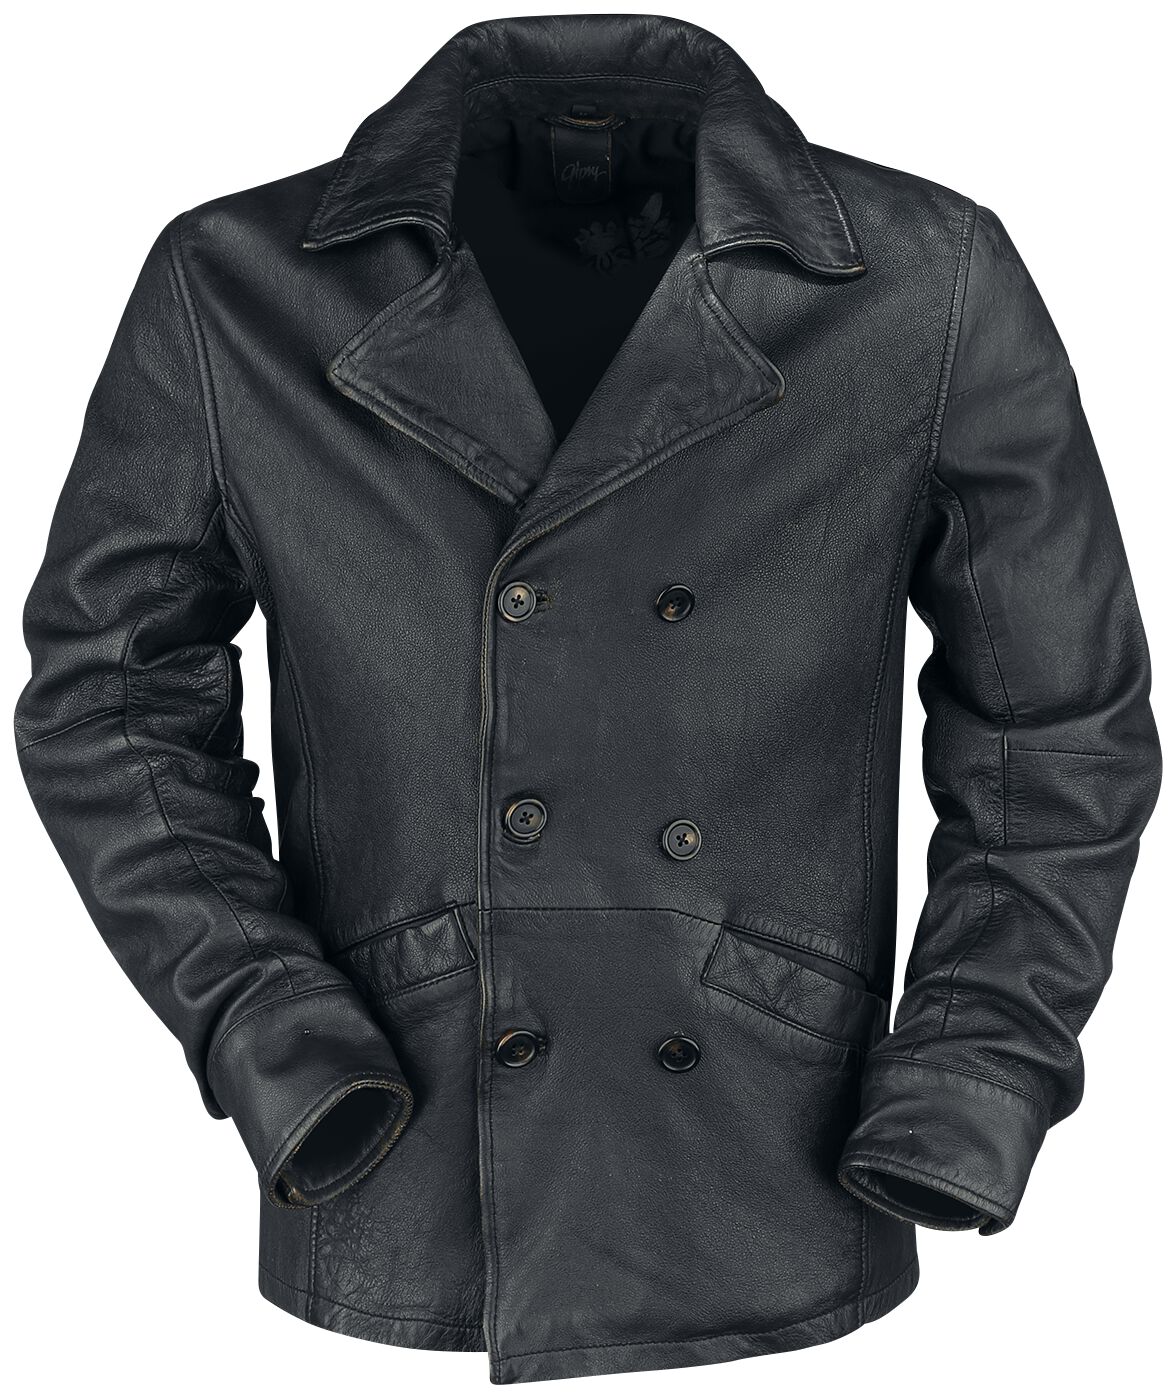 Gipsy Butch LANTVW Leather Jacket black